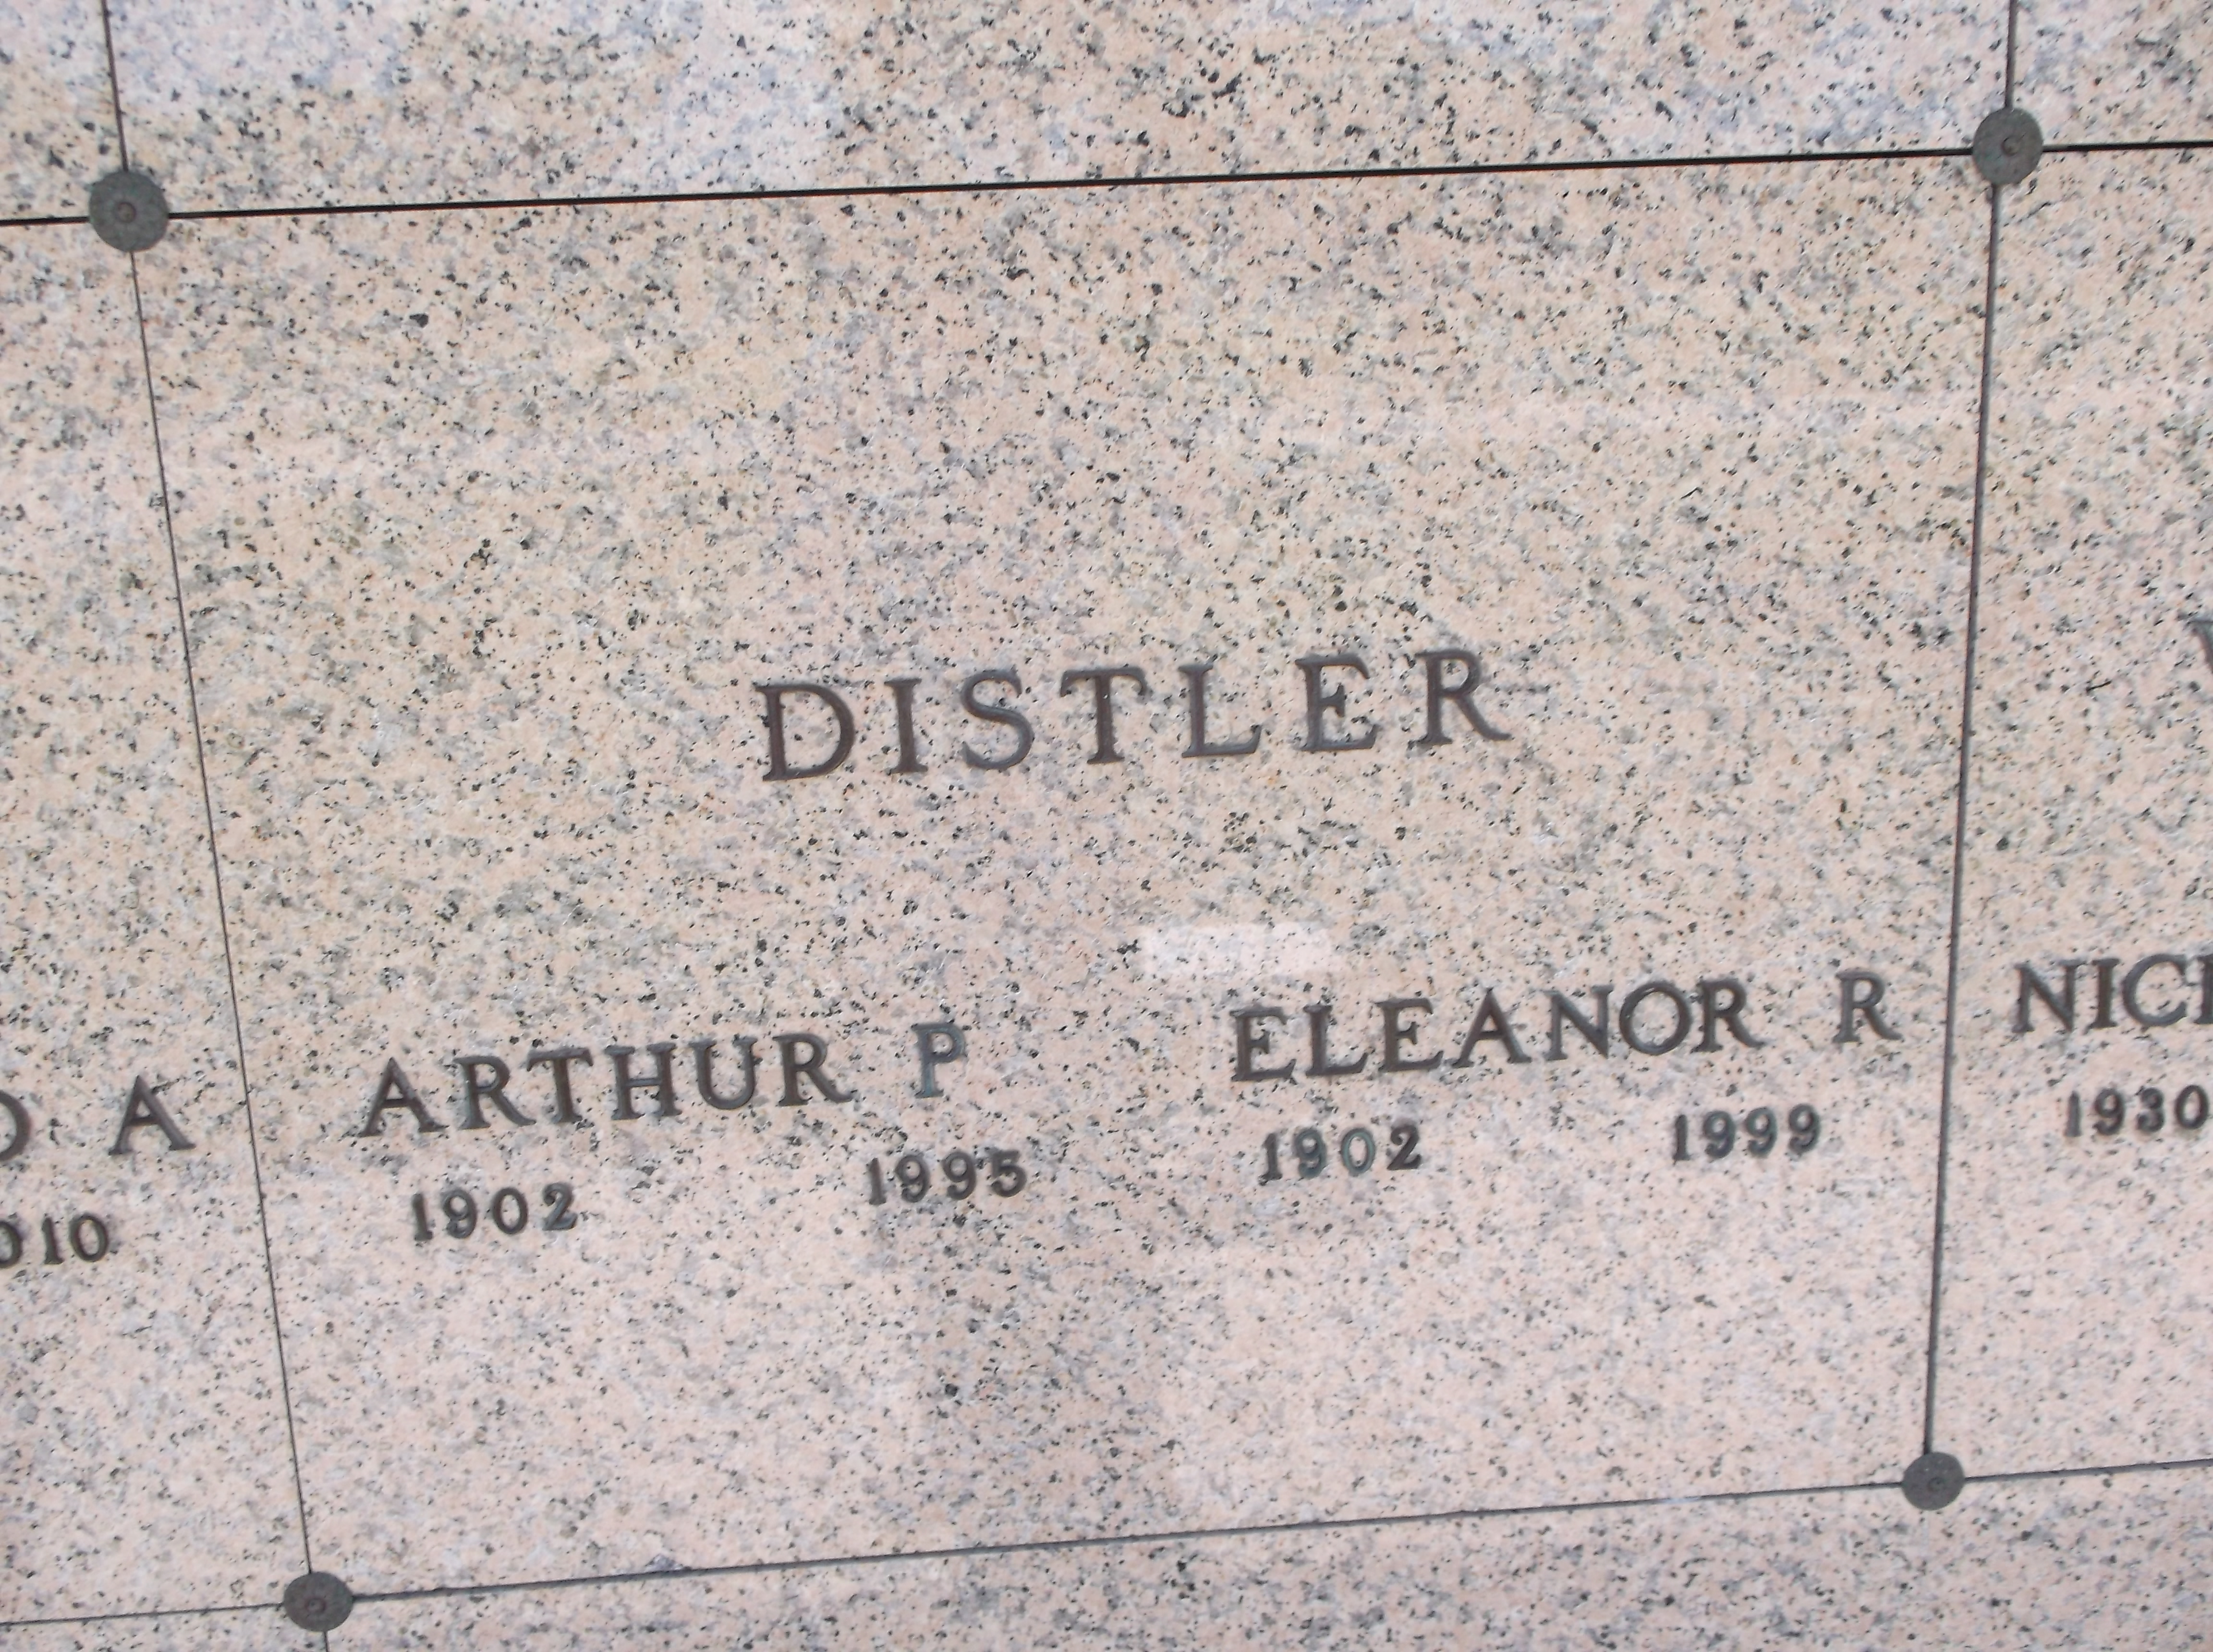 Arthur P Distler